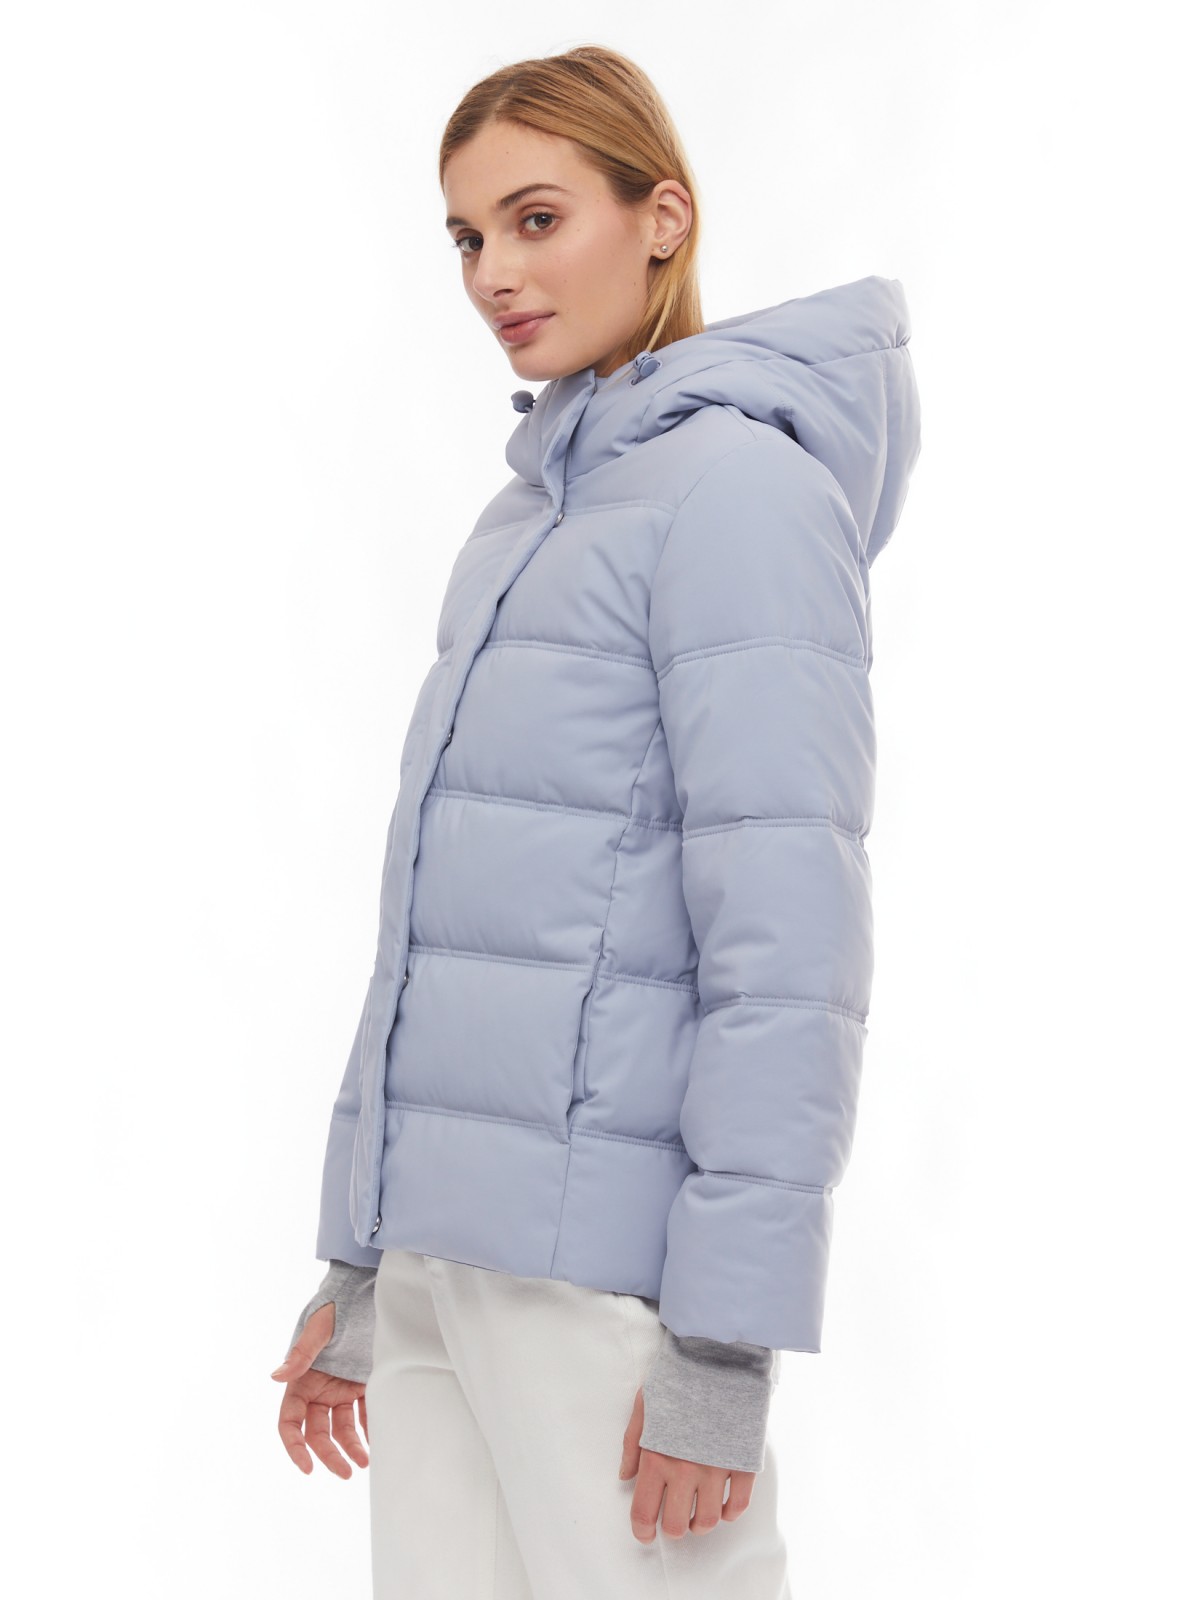 Утеплённая стёганая куртка укороченного фасона с капюшоном zolla 024125102064, цвет светло-голубой, размер XS - фото 4